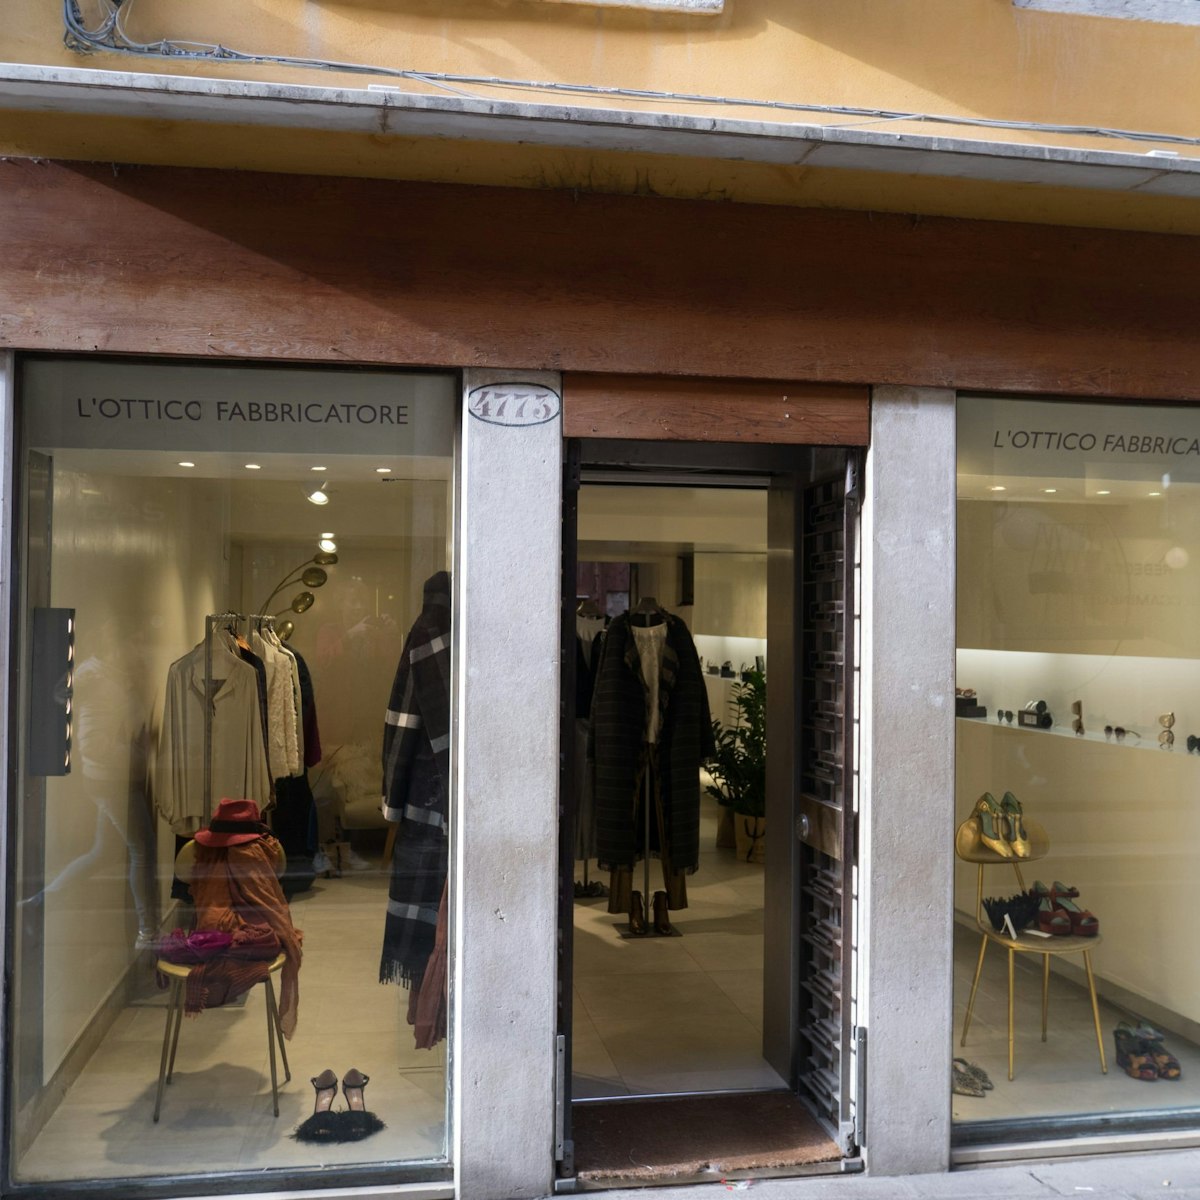 L'Ottico Fabbricatore's spare and essential shopfront